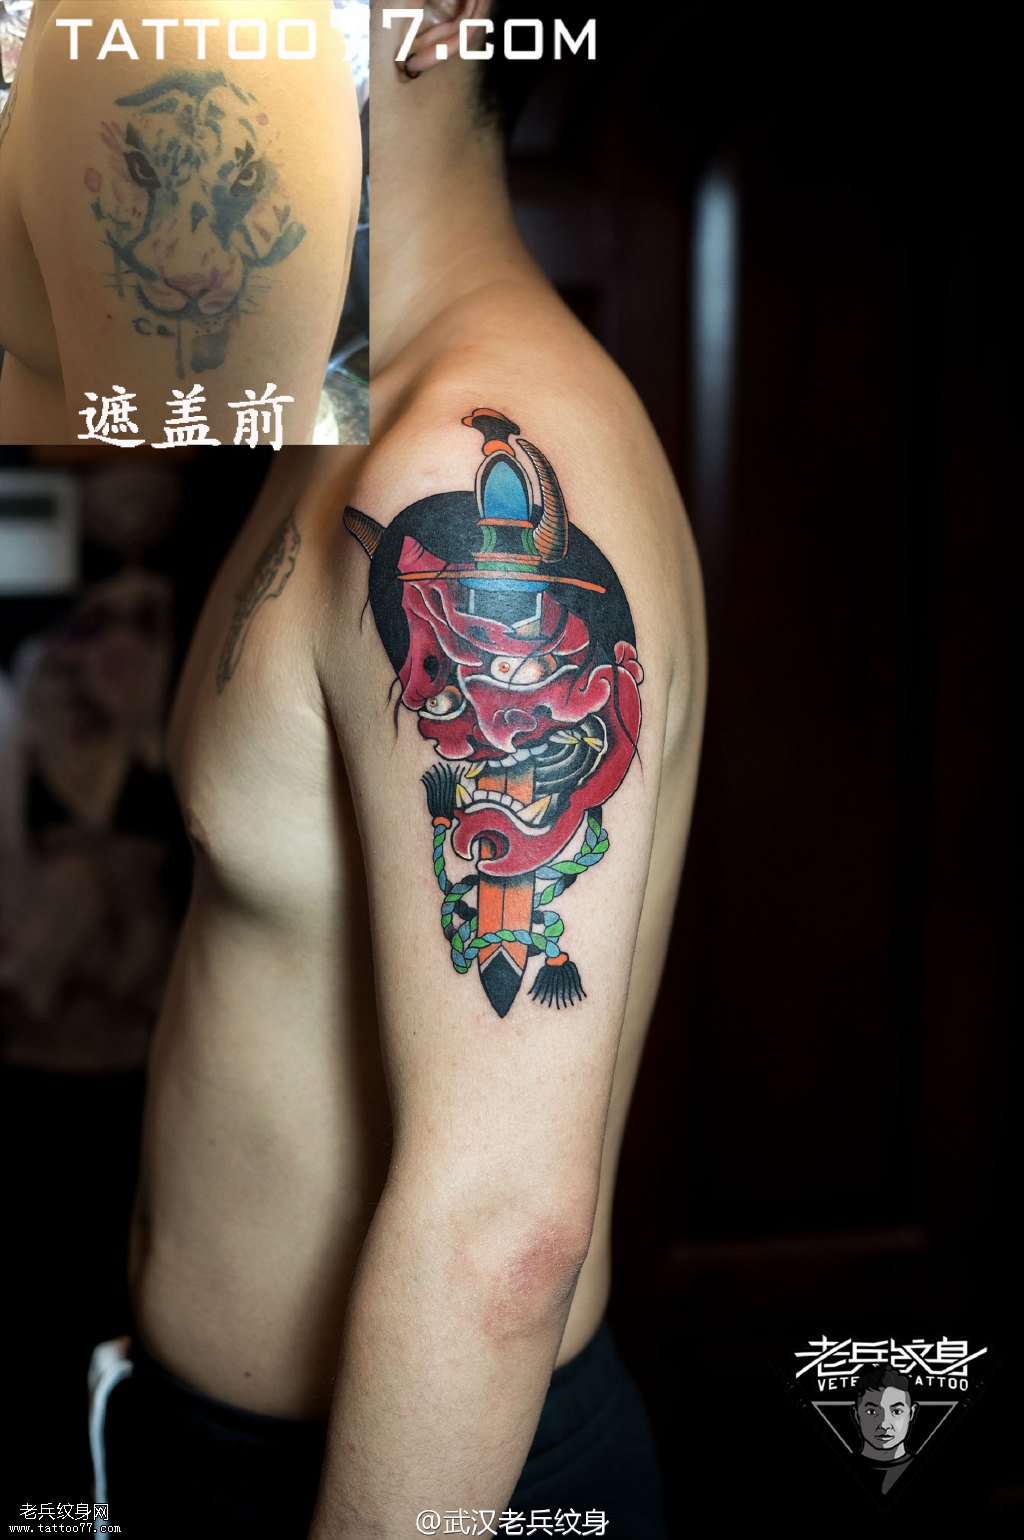 大臂日本般若纹身图案作品遮盖旧纹身